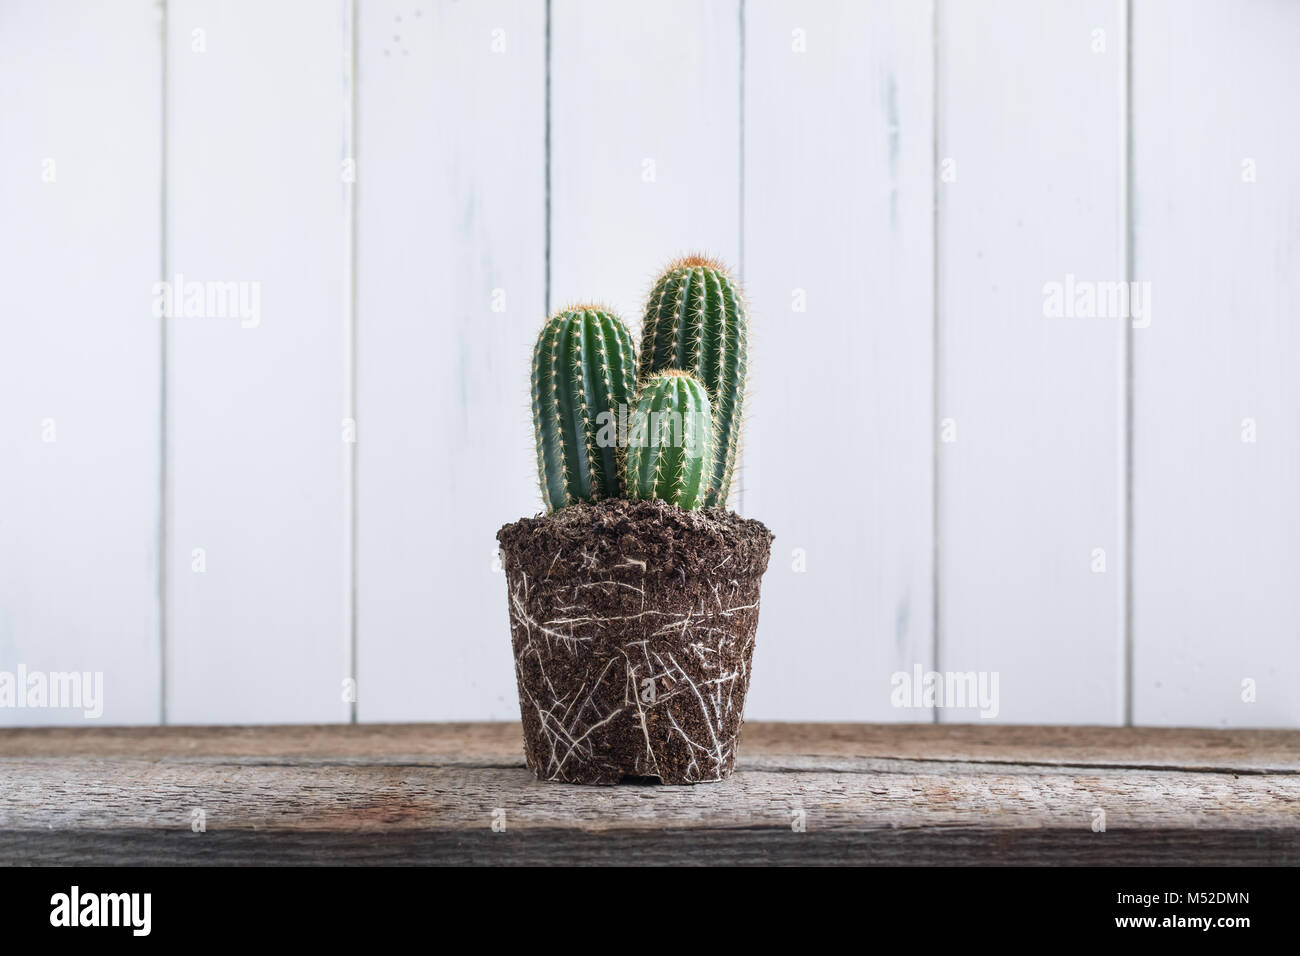 Grünen Kaktus ohne Topf auf rustikalen Holzmöbeln Hintergrund. Deadpan  Stil. Realistisch Stockfotografie - Alamy